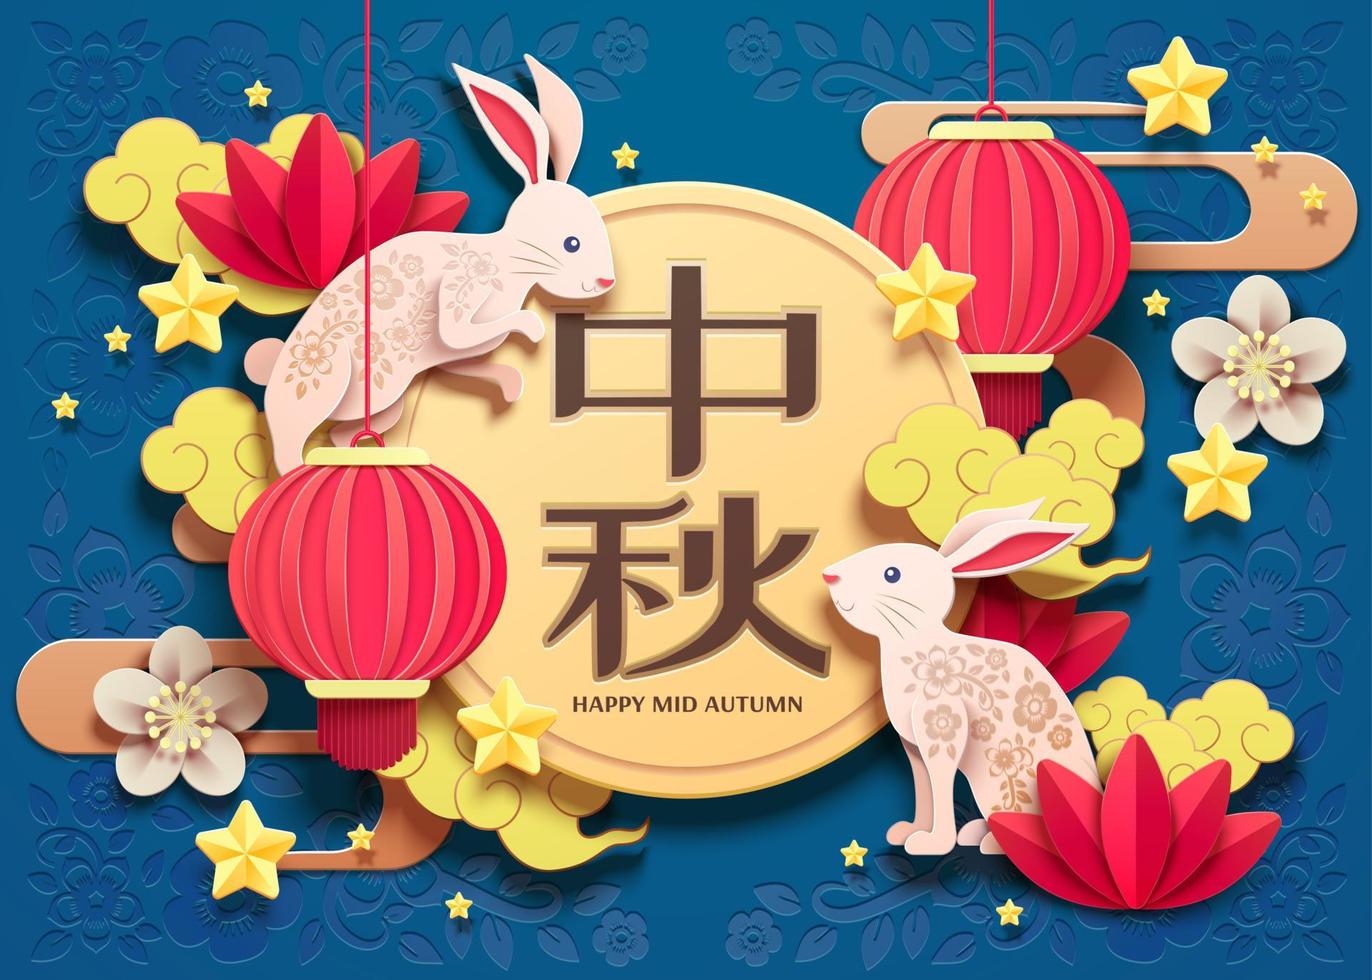 feliz design de arte em papel do festival do meio do outono com coelho branco e elementos de lanternas em fundo azul, nome do feriado escrito em palavras chinesas vetor